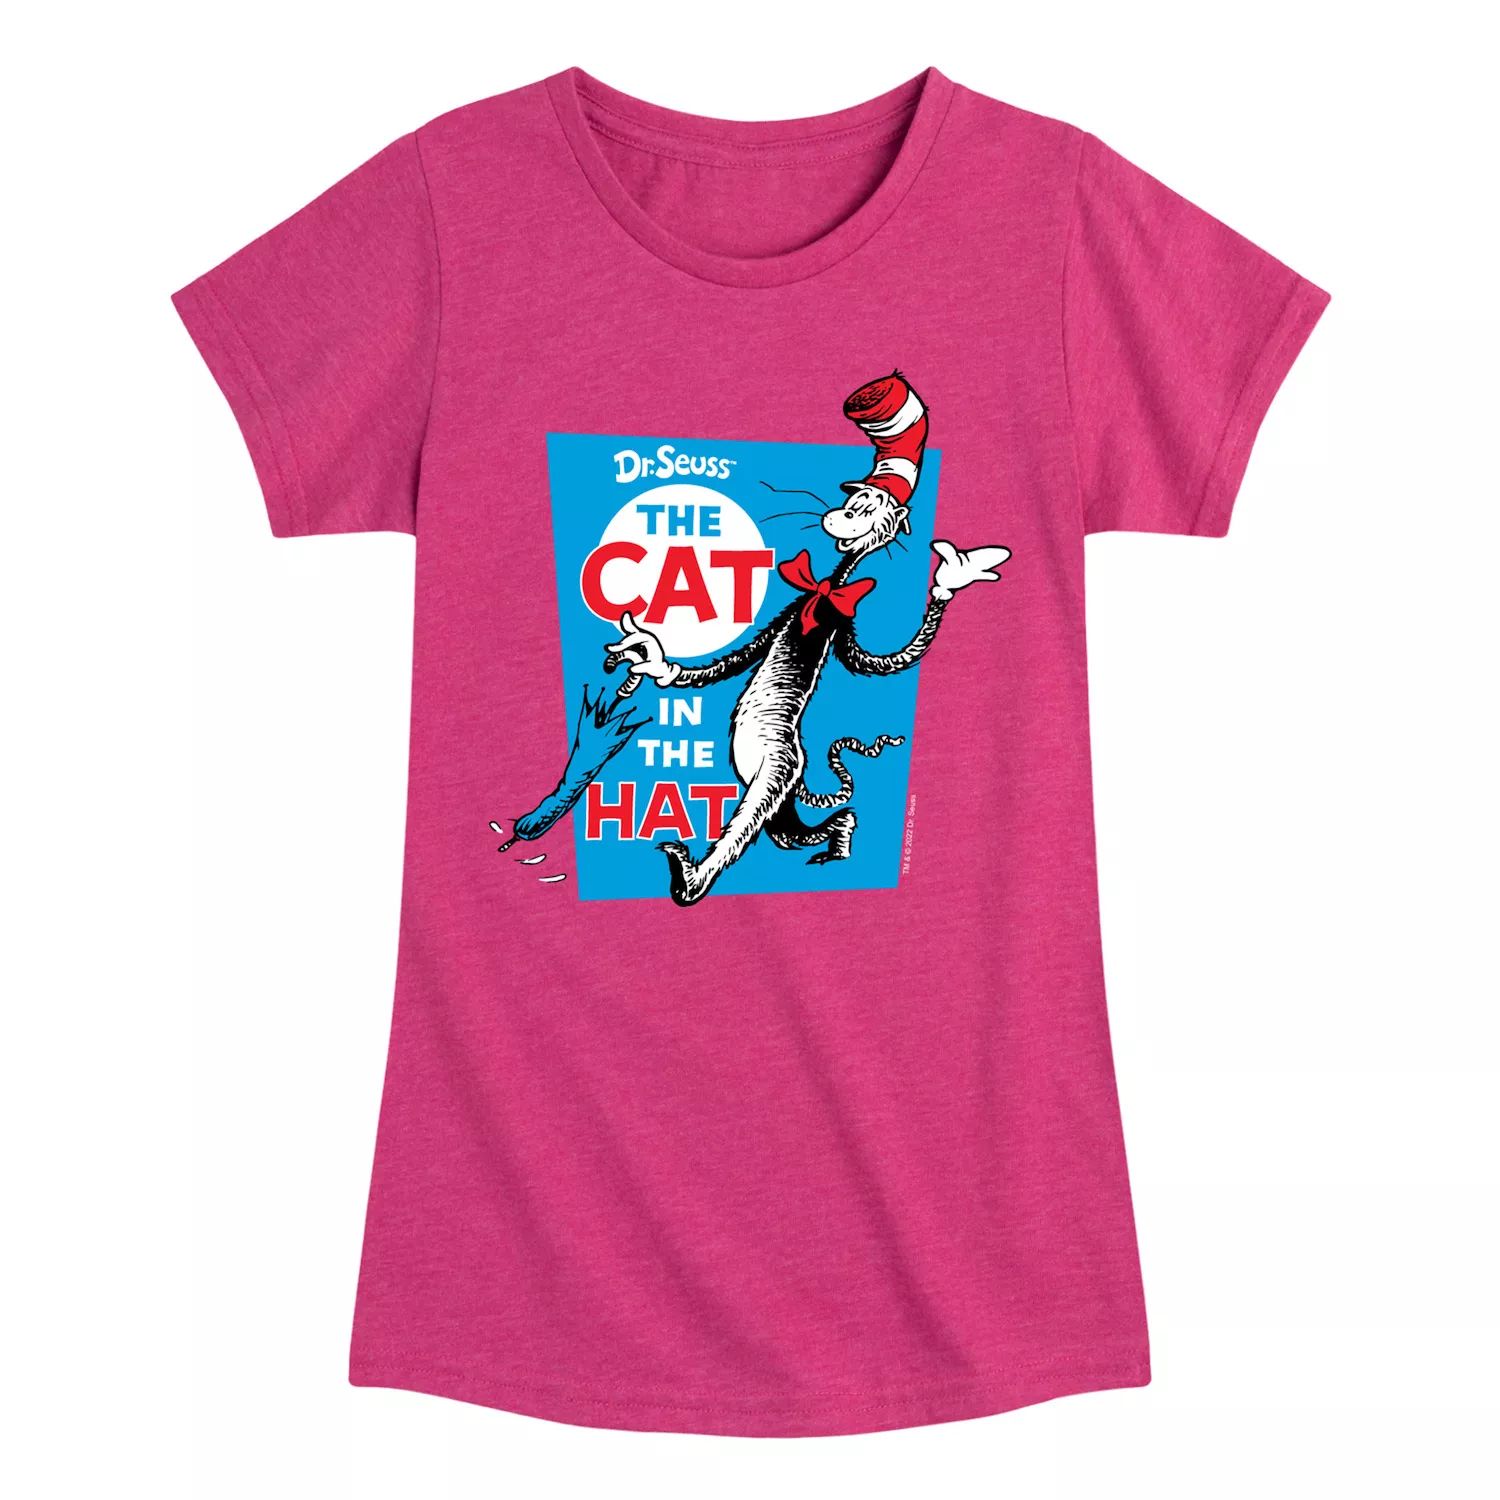 Футболка с рисунком «Кот в шляпе» для девочек 7–16 лет «Доктор Сьюз» Licensed Character, ярко-розовый футболка с рисунком доктор сьюз для девочек 7–16 лет места куда я пойду dr seuss розовый